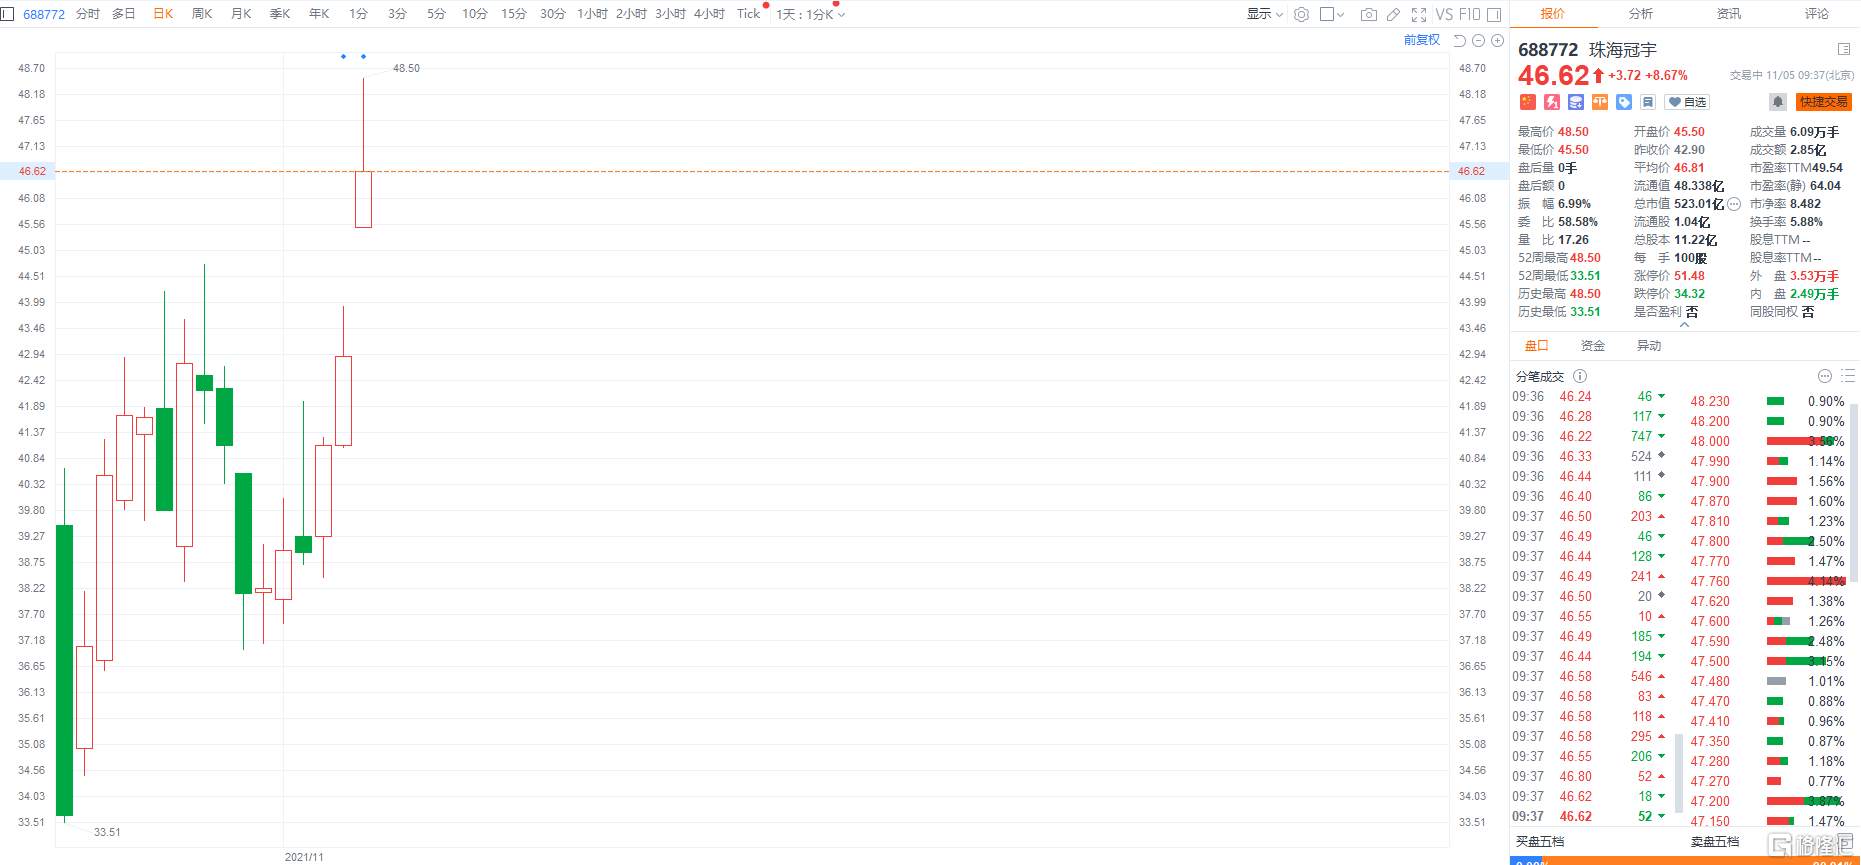 次新股珠海冠宇(688772.SH)大涨8.67%，报46.62元，